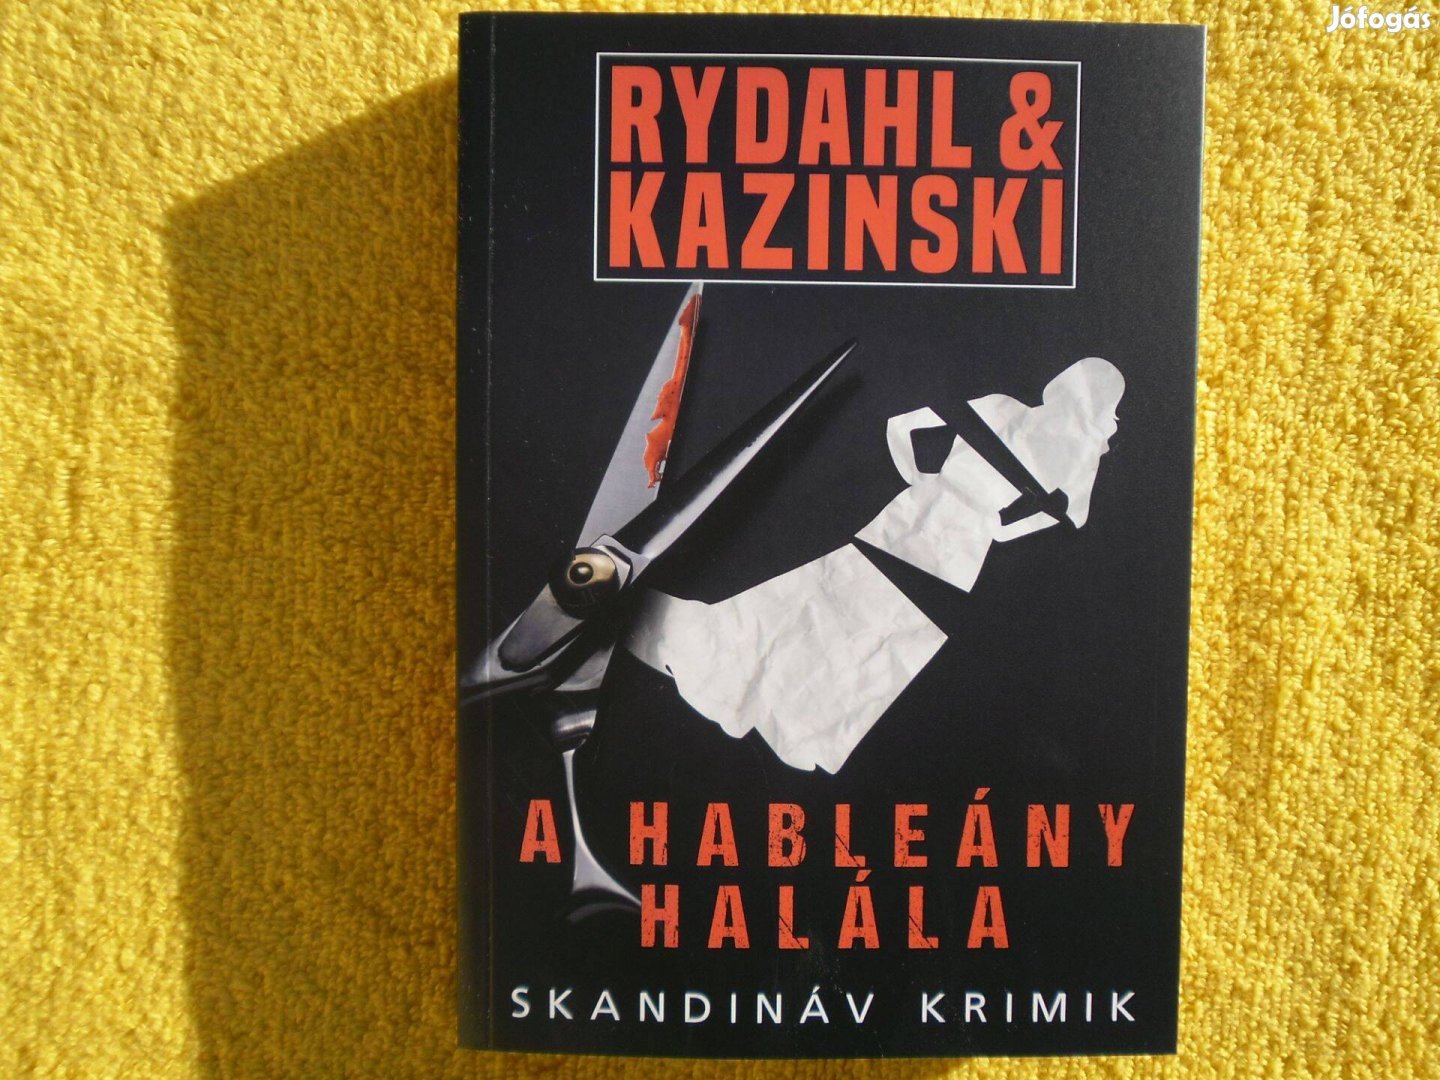 Rydahl & Kazinski: A hableány halála /Skandináv krimik/